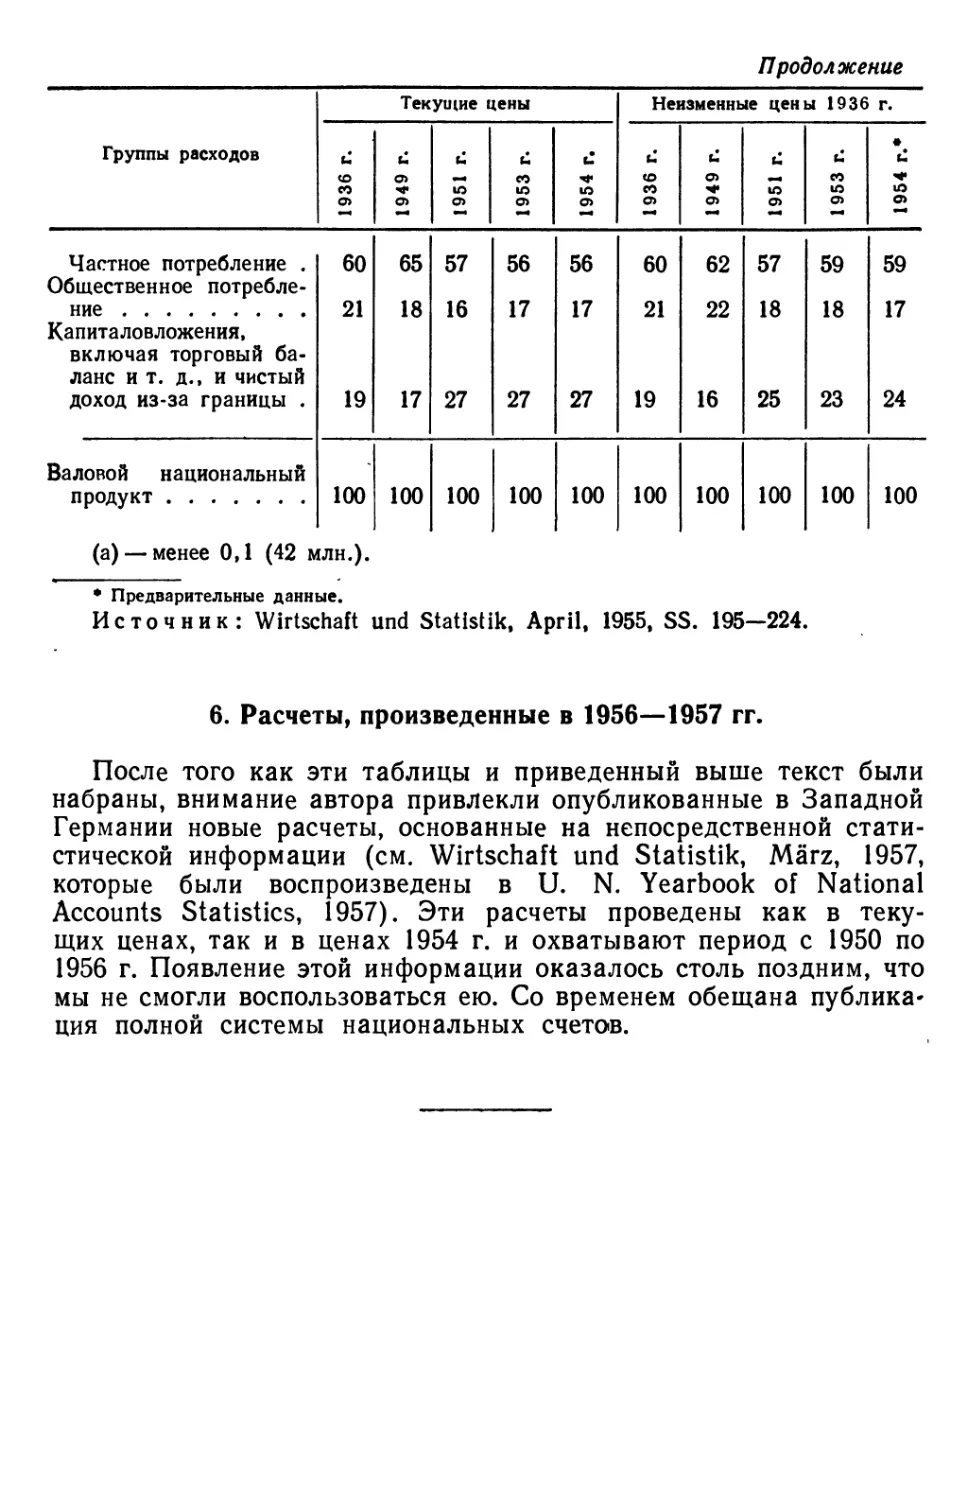 6. Расчеты, произведенные в 1956—1957 гг